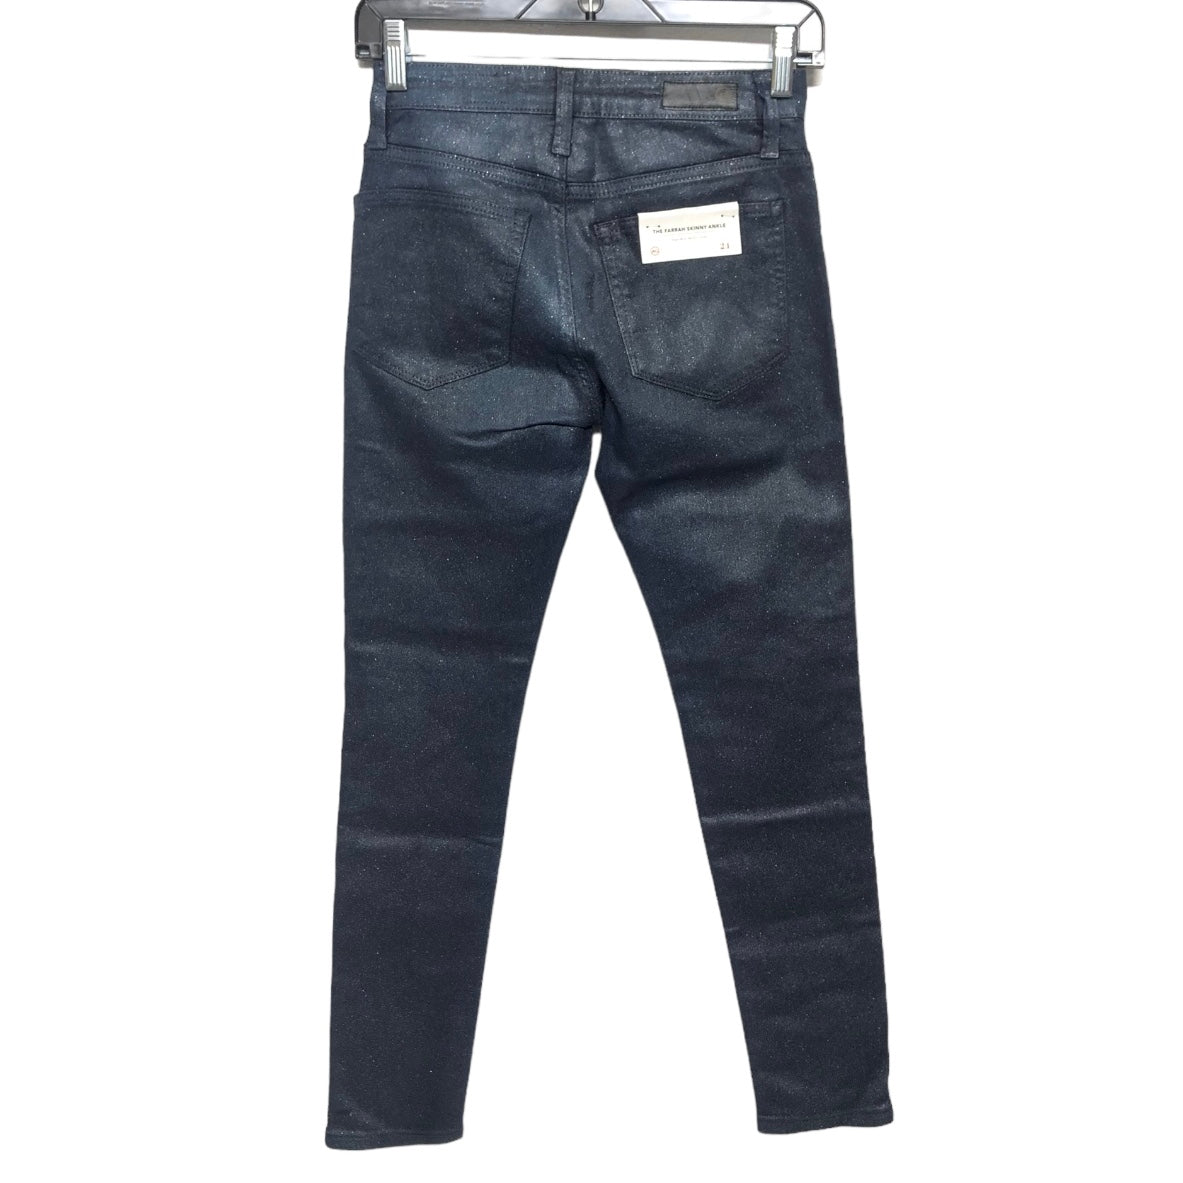 Jeans Skinny By Adriano Goldschmied  Size: 00